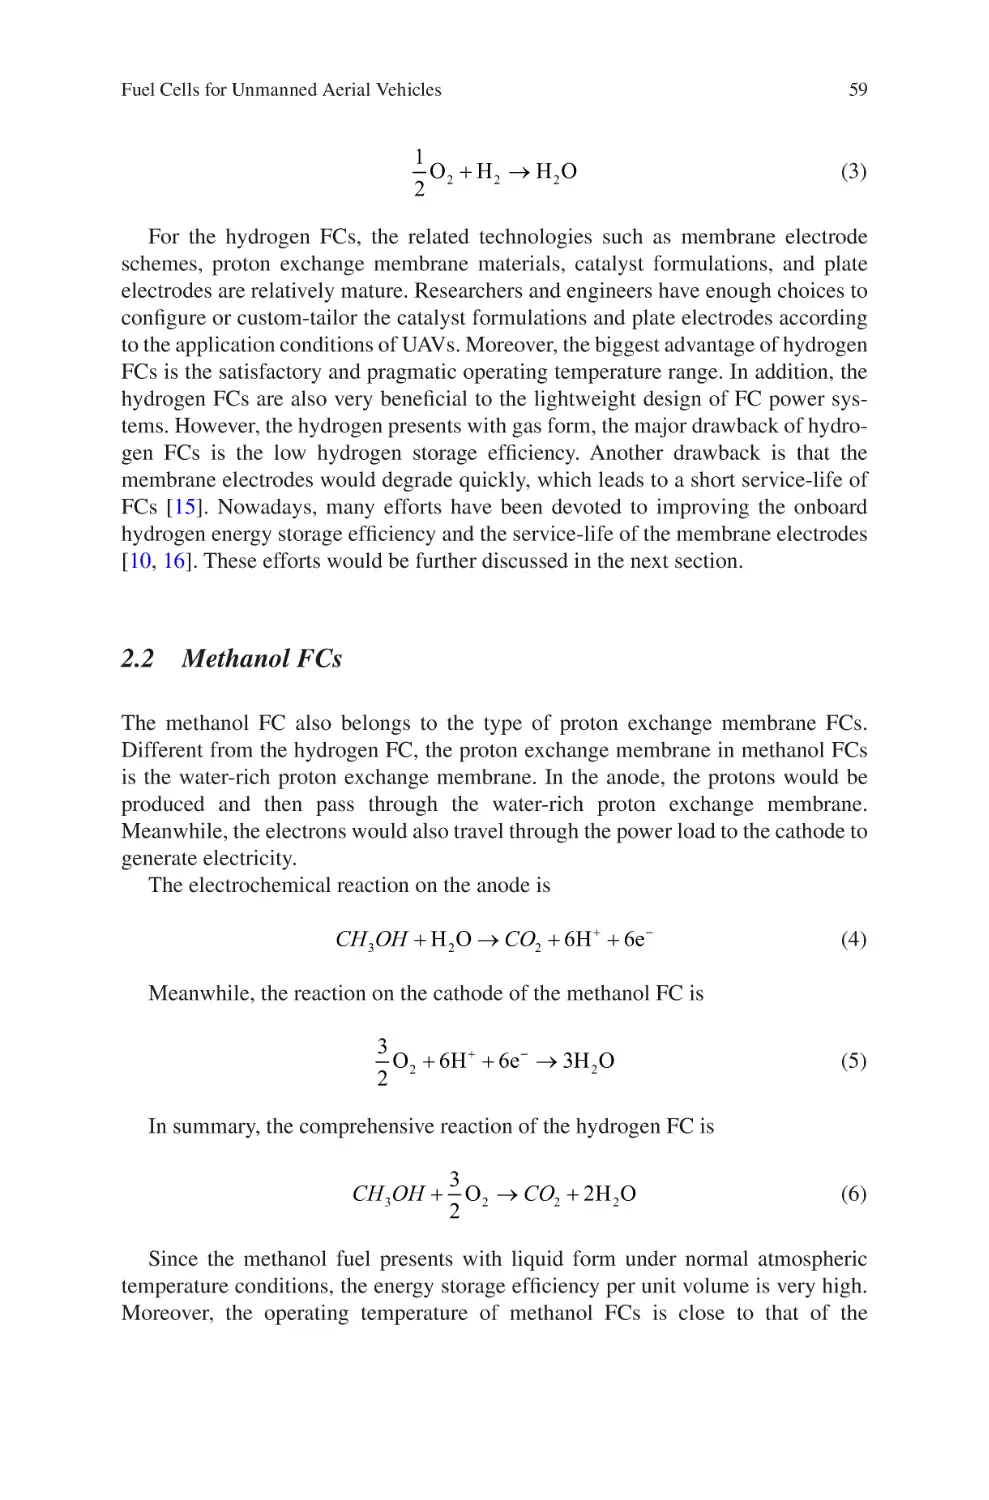 2.2 Methanol FCs